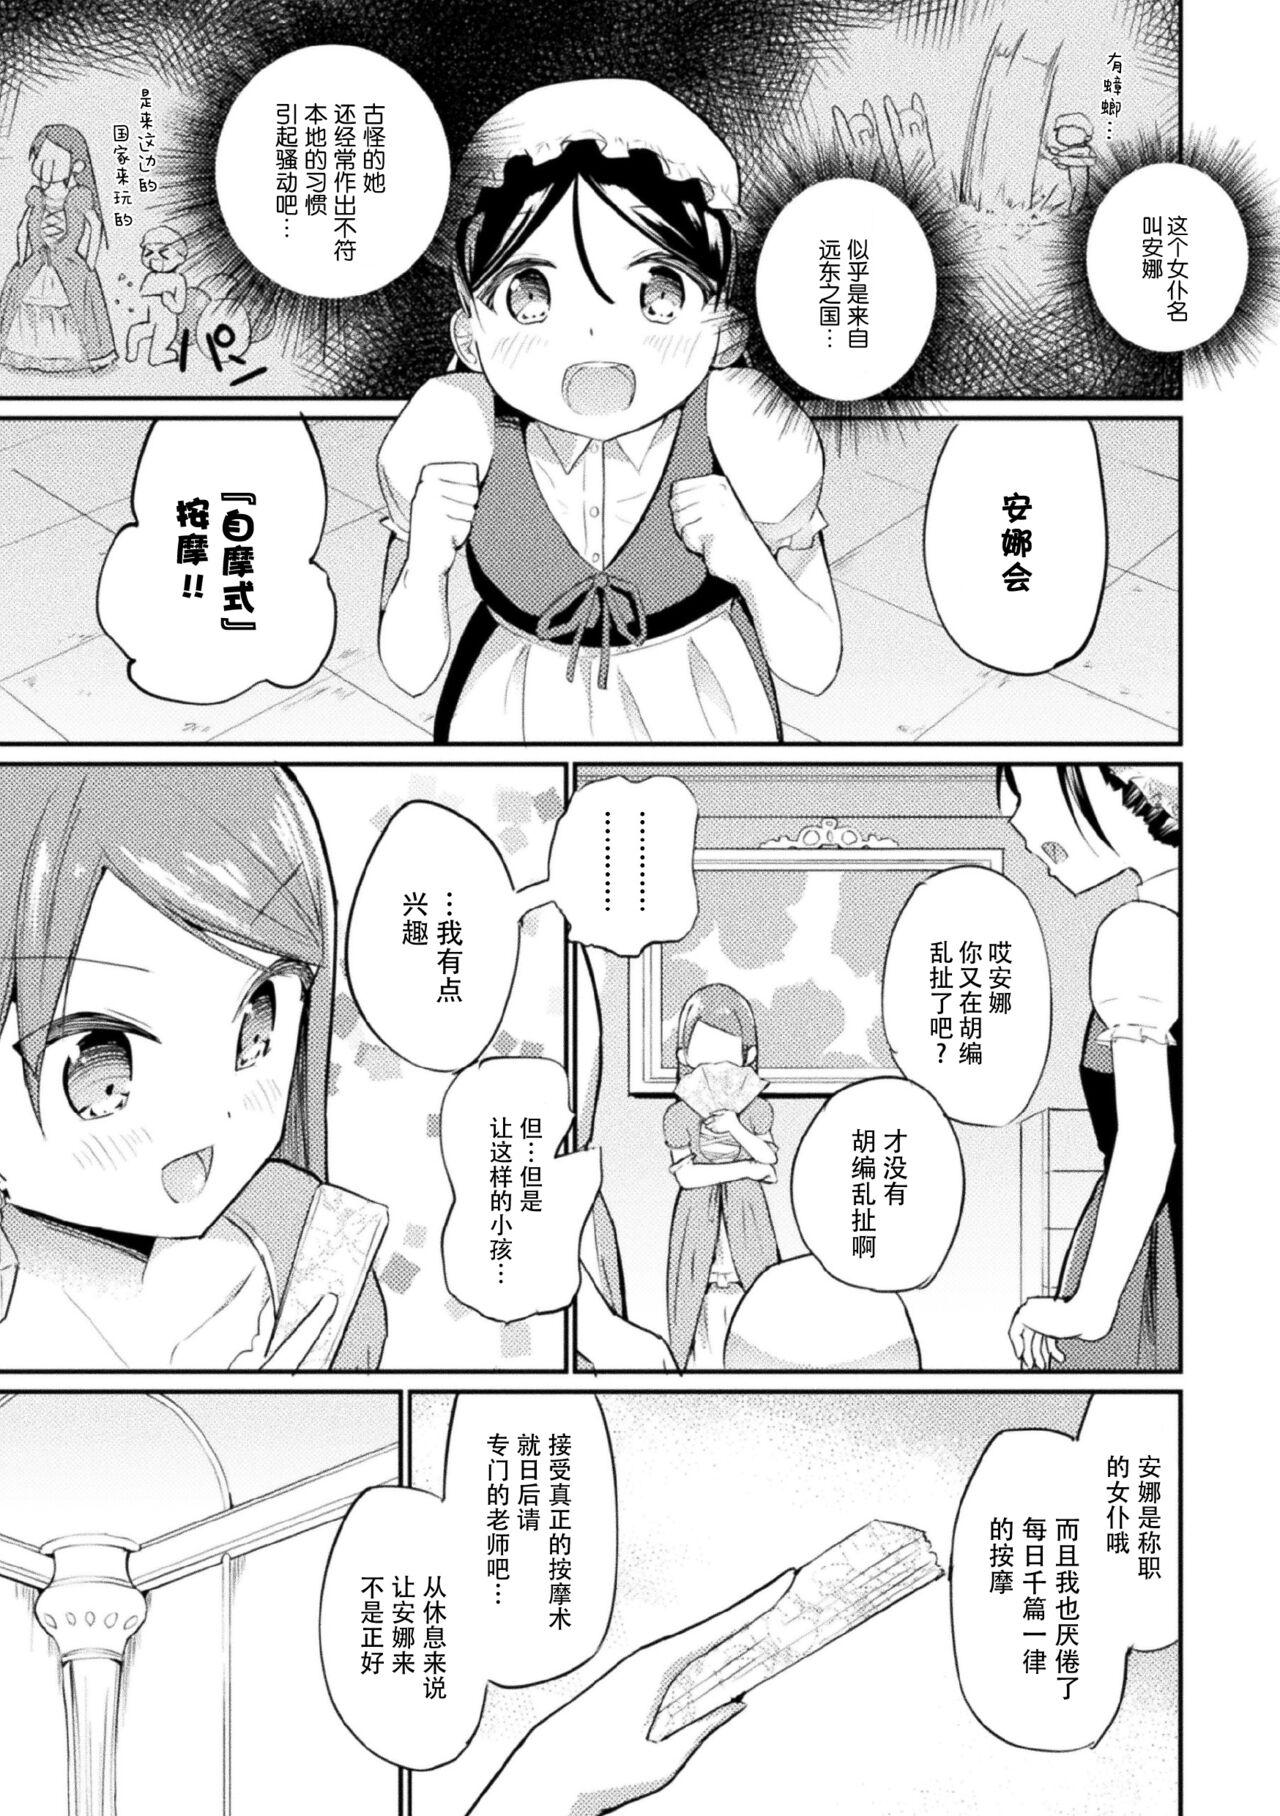 Gordita Youjou no maede onanisuru watashi【Dokiki汉化组】 Anime - Page 3